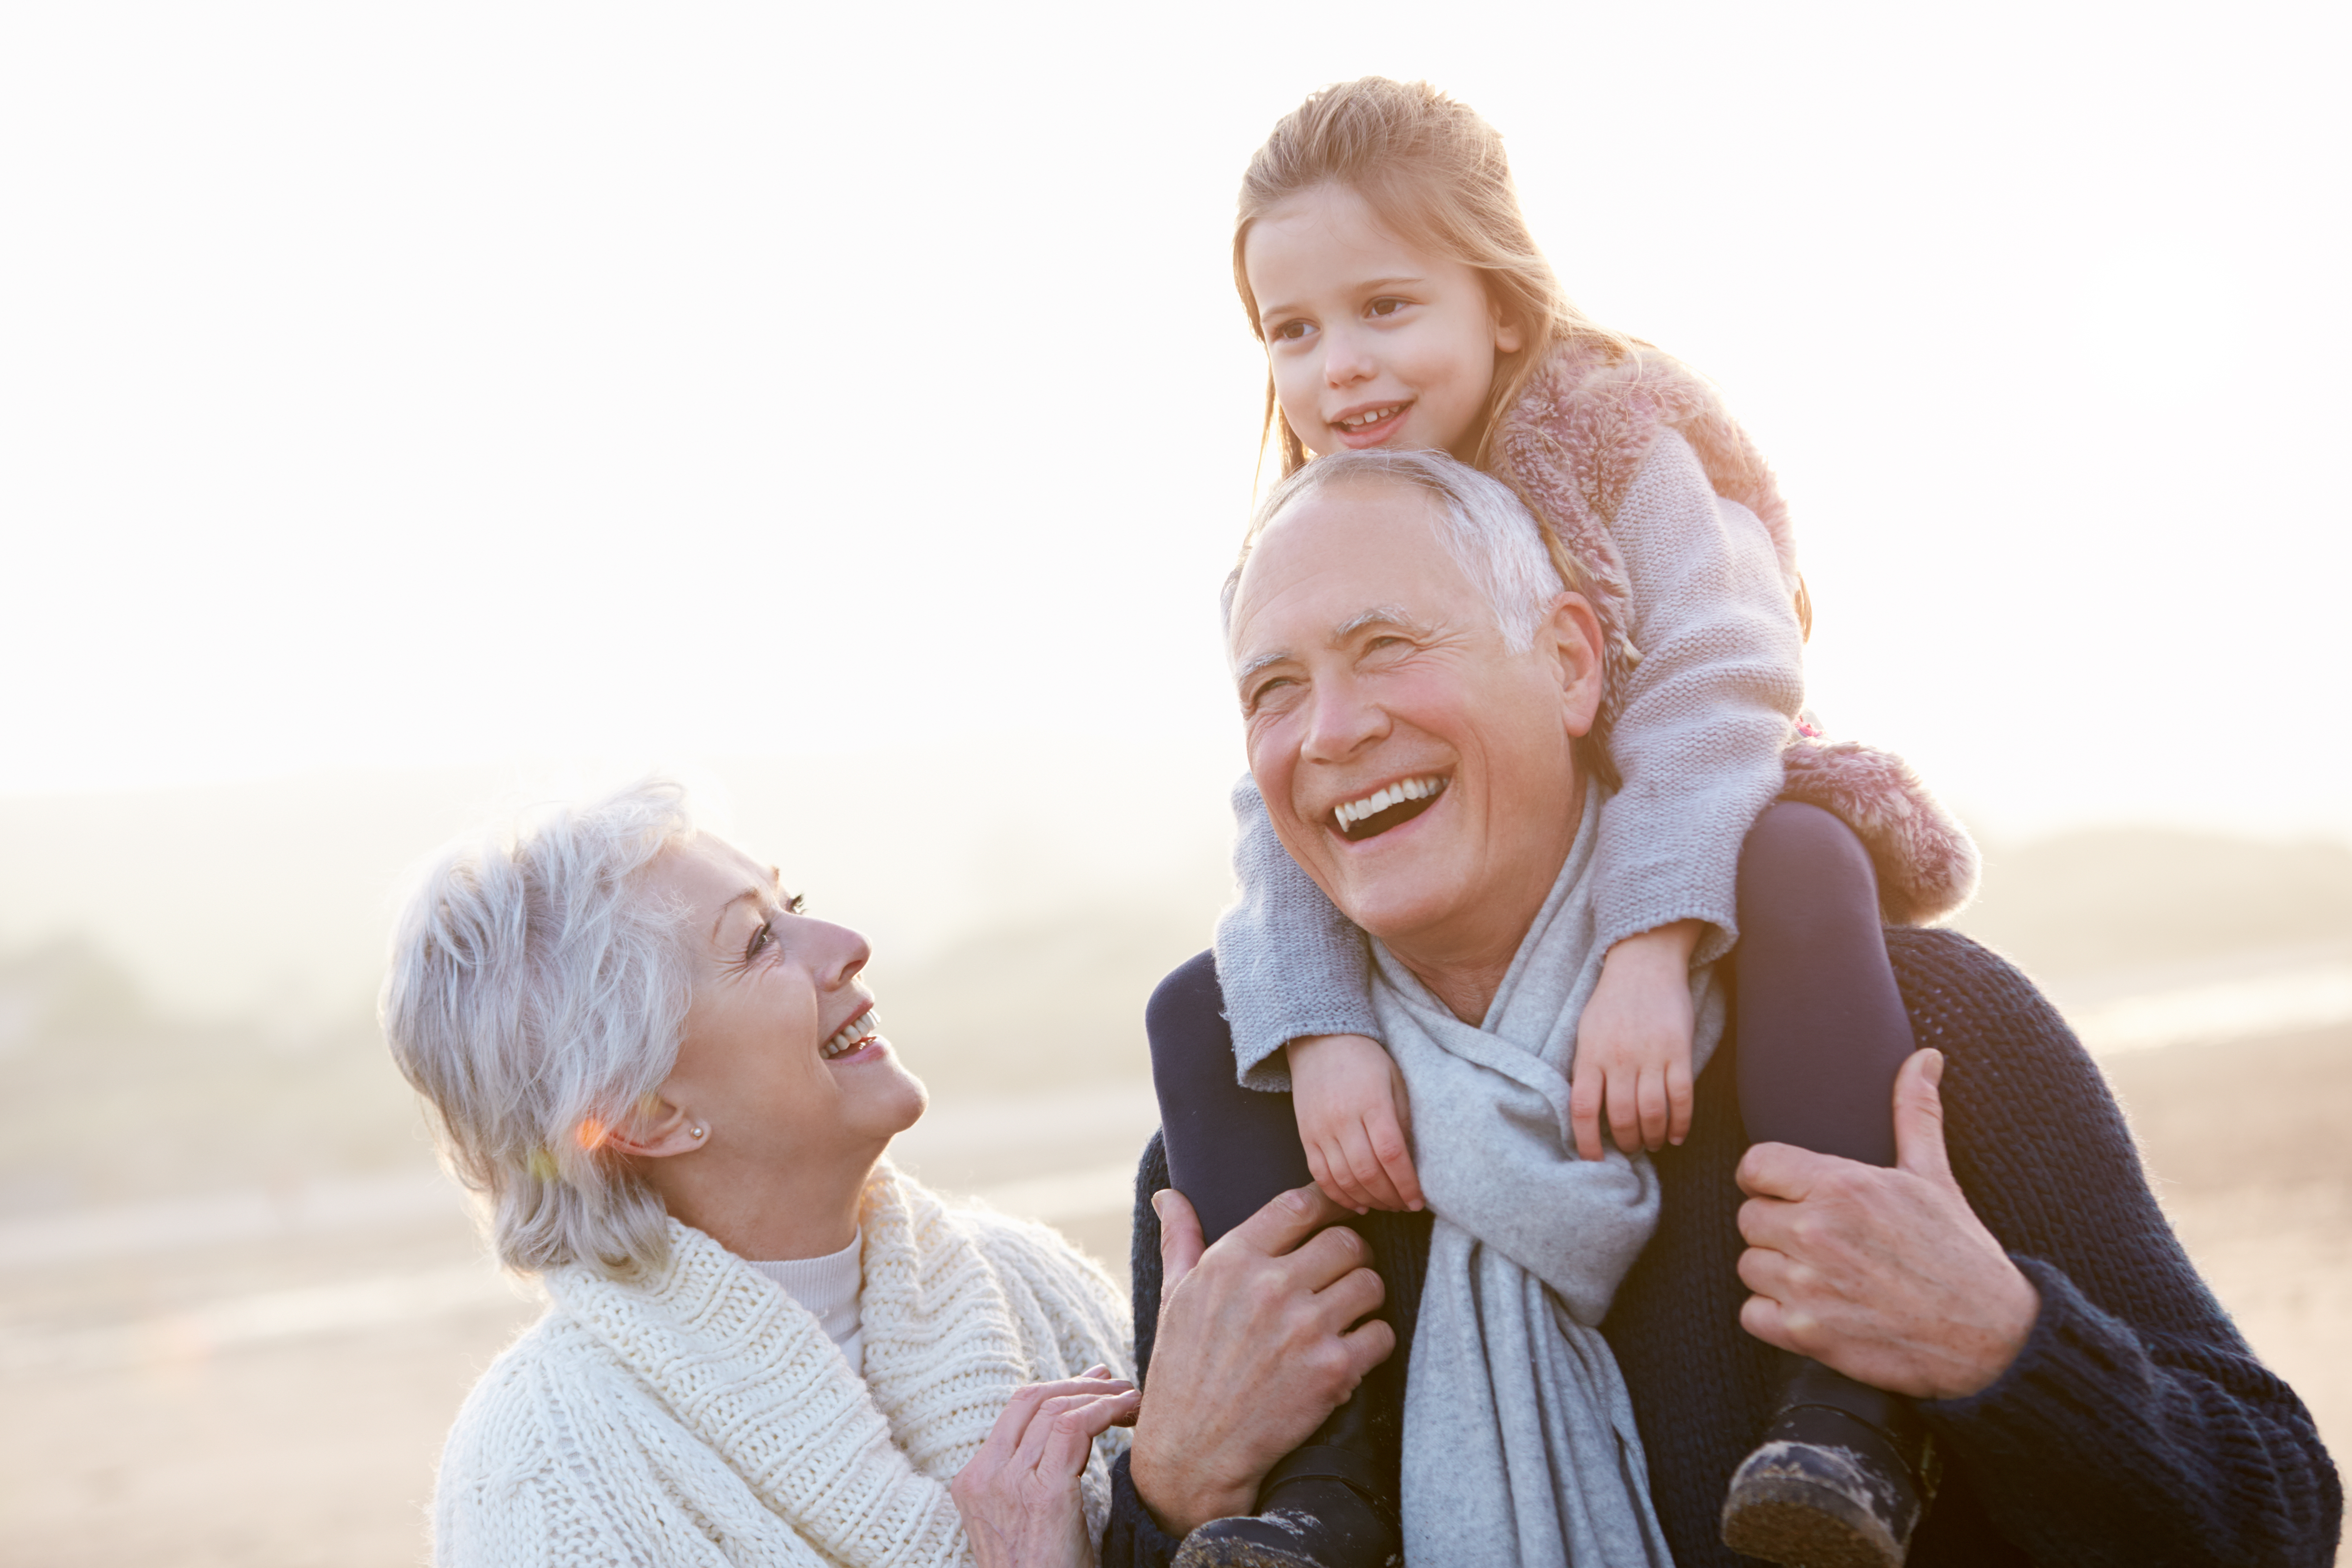 Eine Großmutter lacht, während ihr Mann ihr Enkelkind auf den Schultern trägt | Quelle: Shutterstock